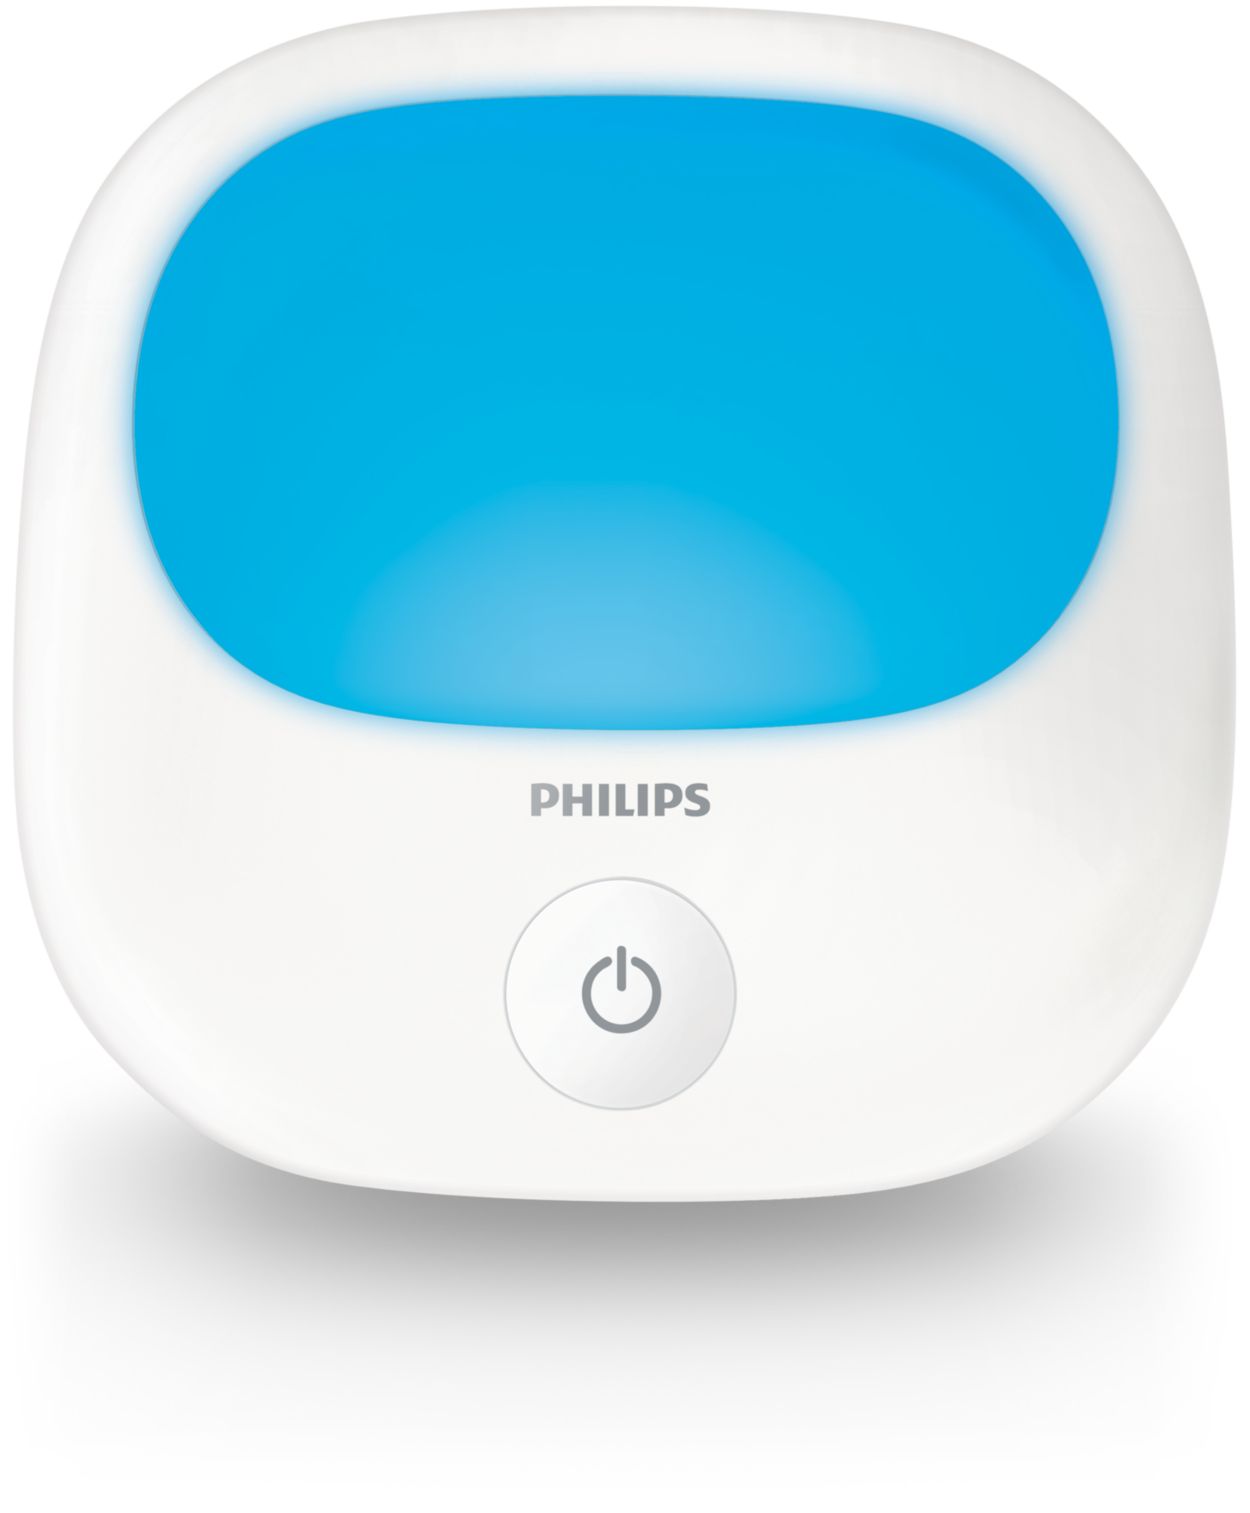 EnergyUp | Philips